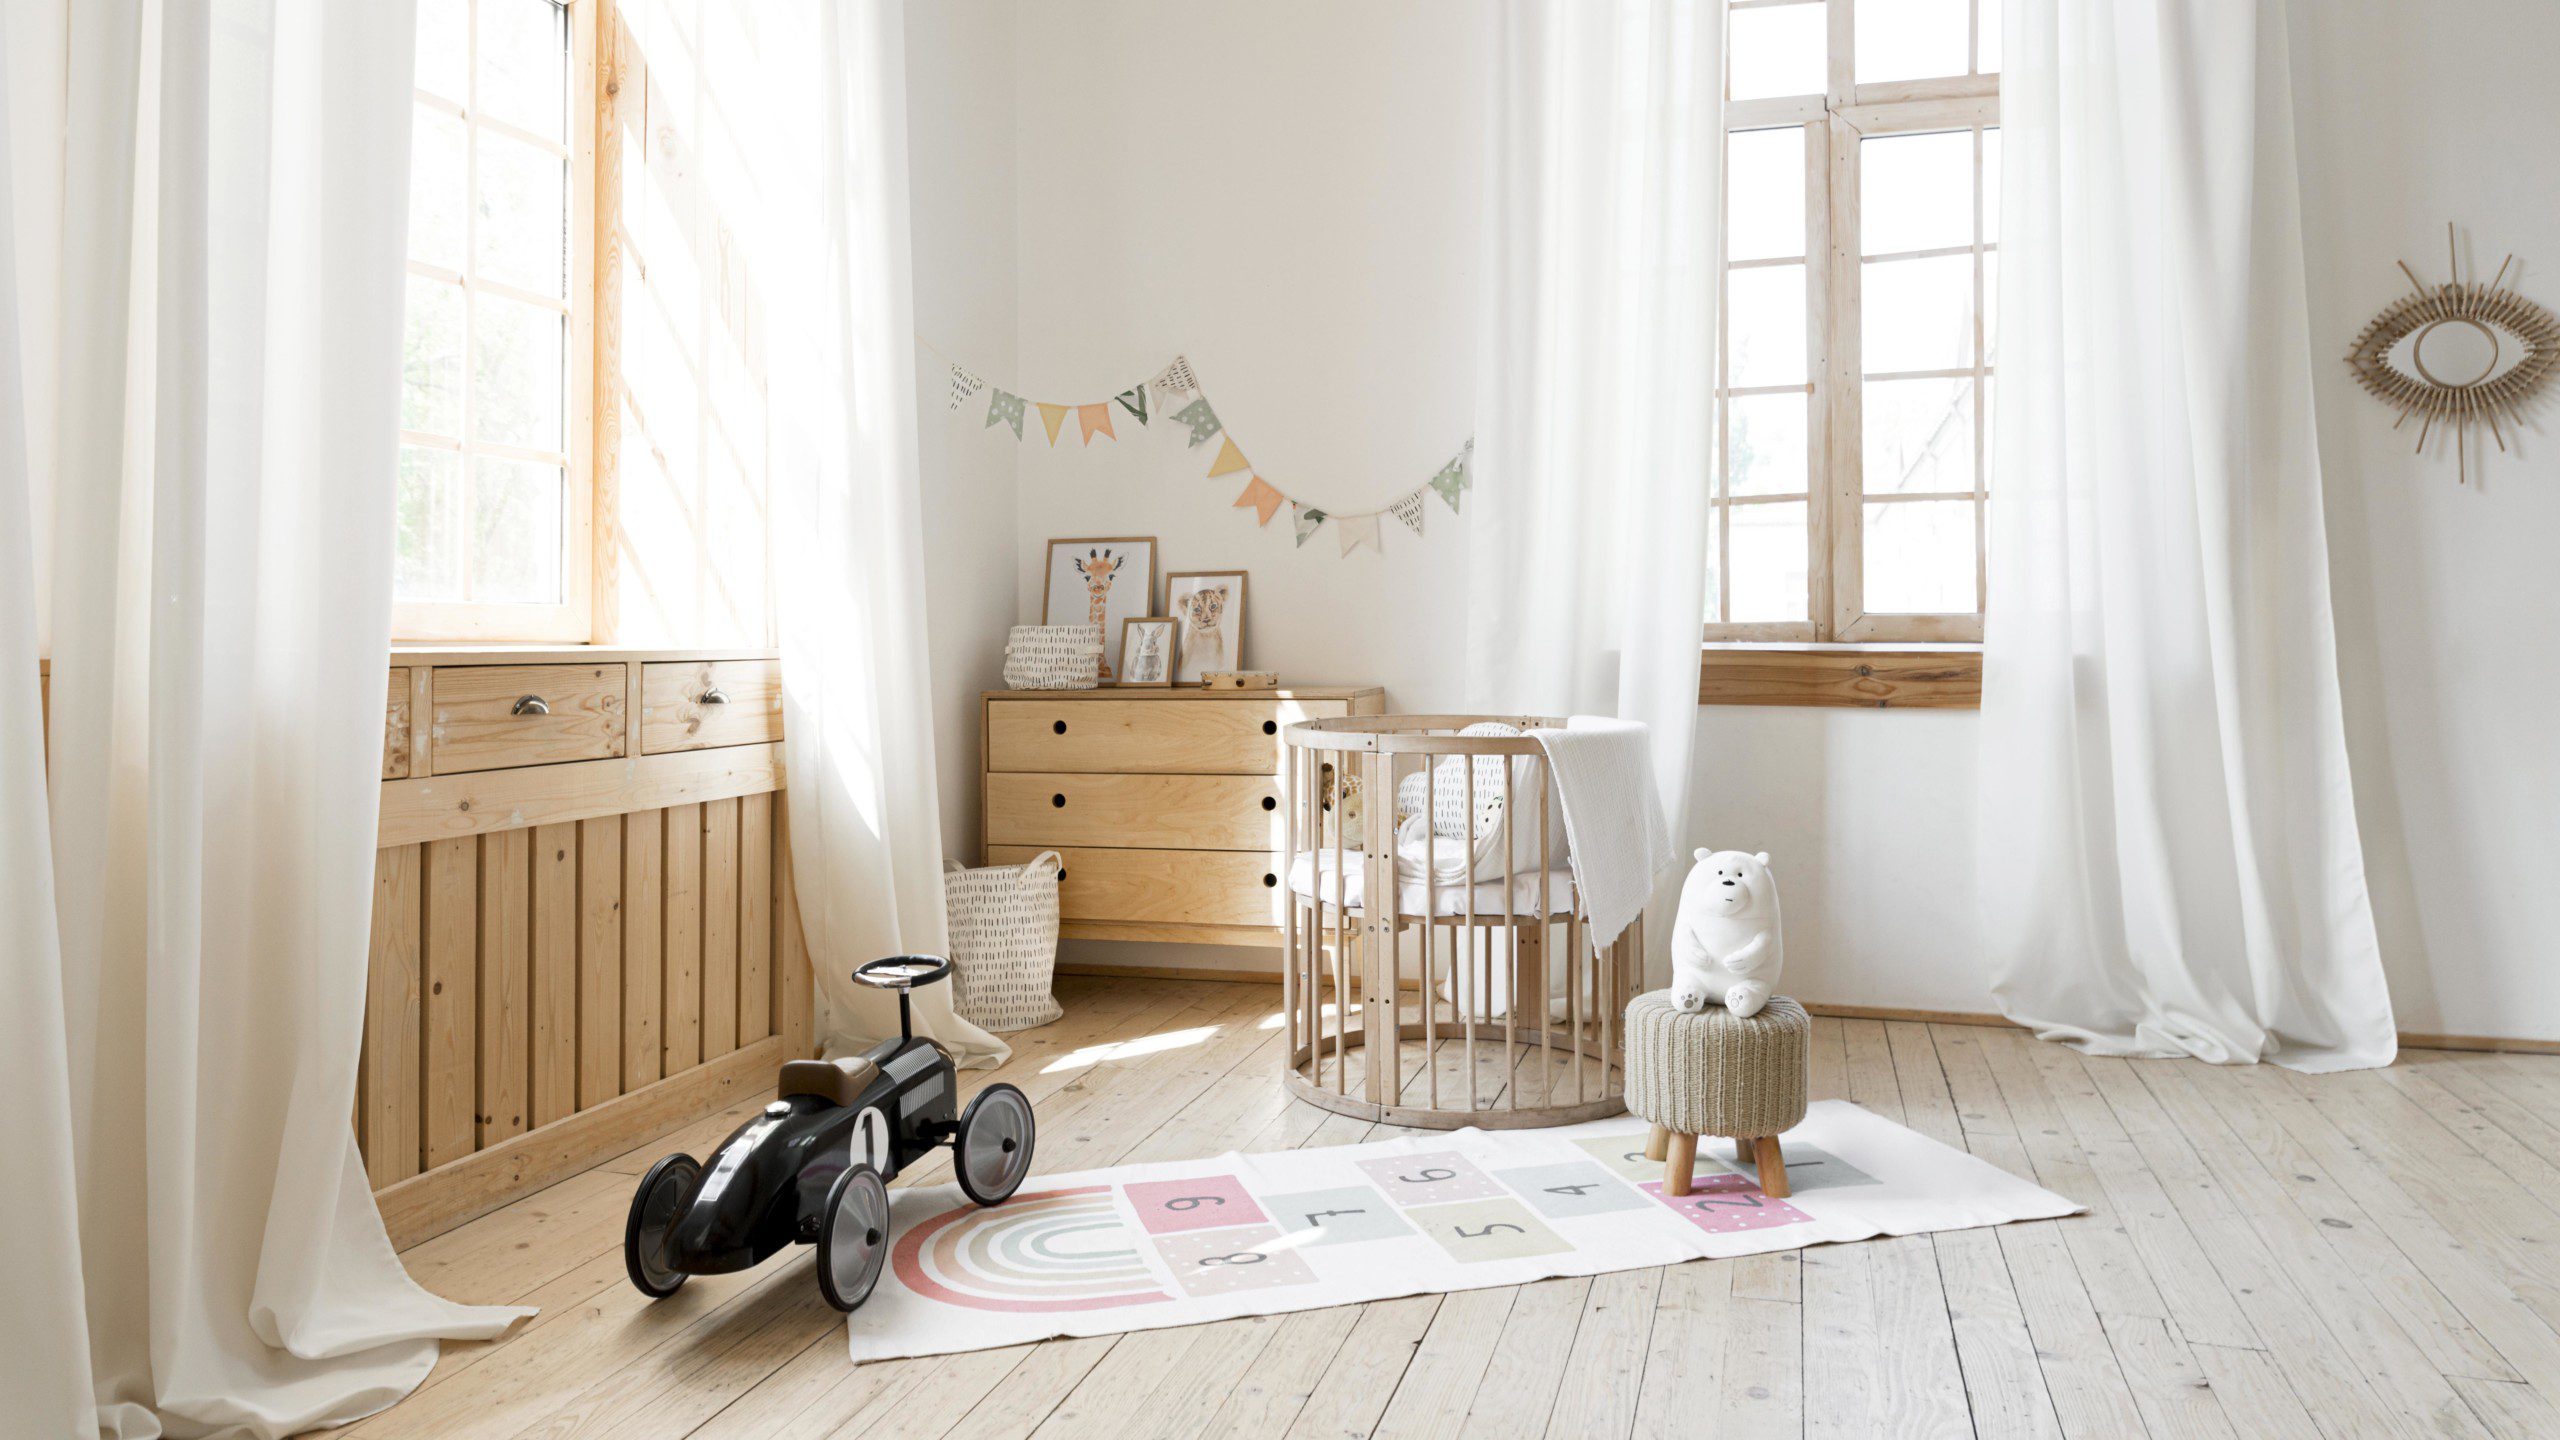 Decoração de quarto infantil estilo boho com detalhes em madeiras, tons neutros e móveis vintage.